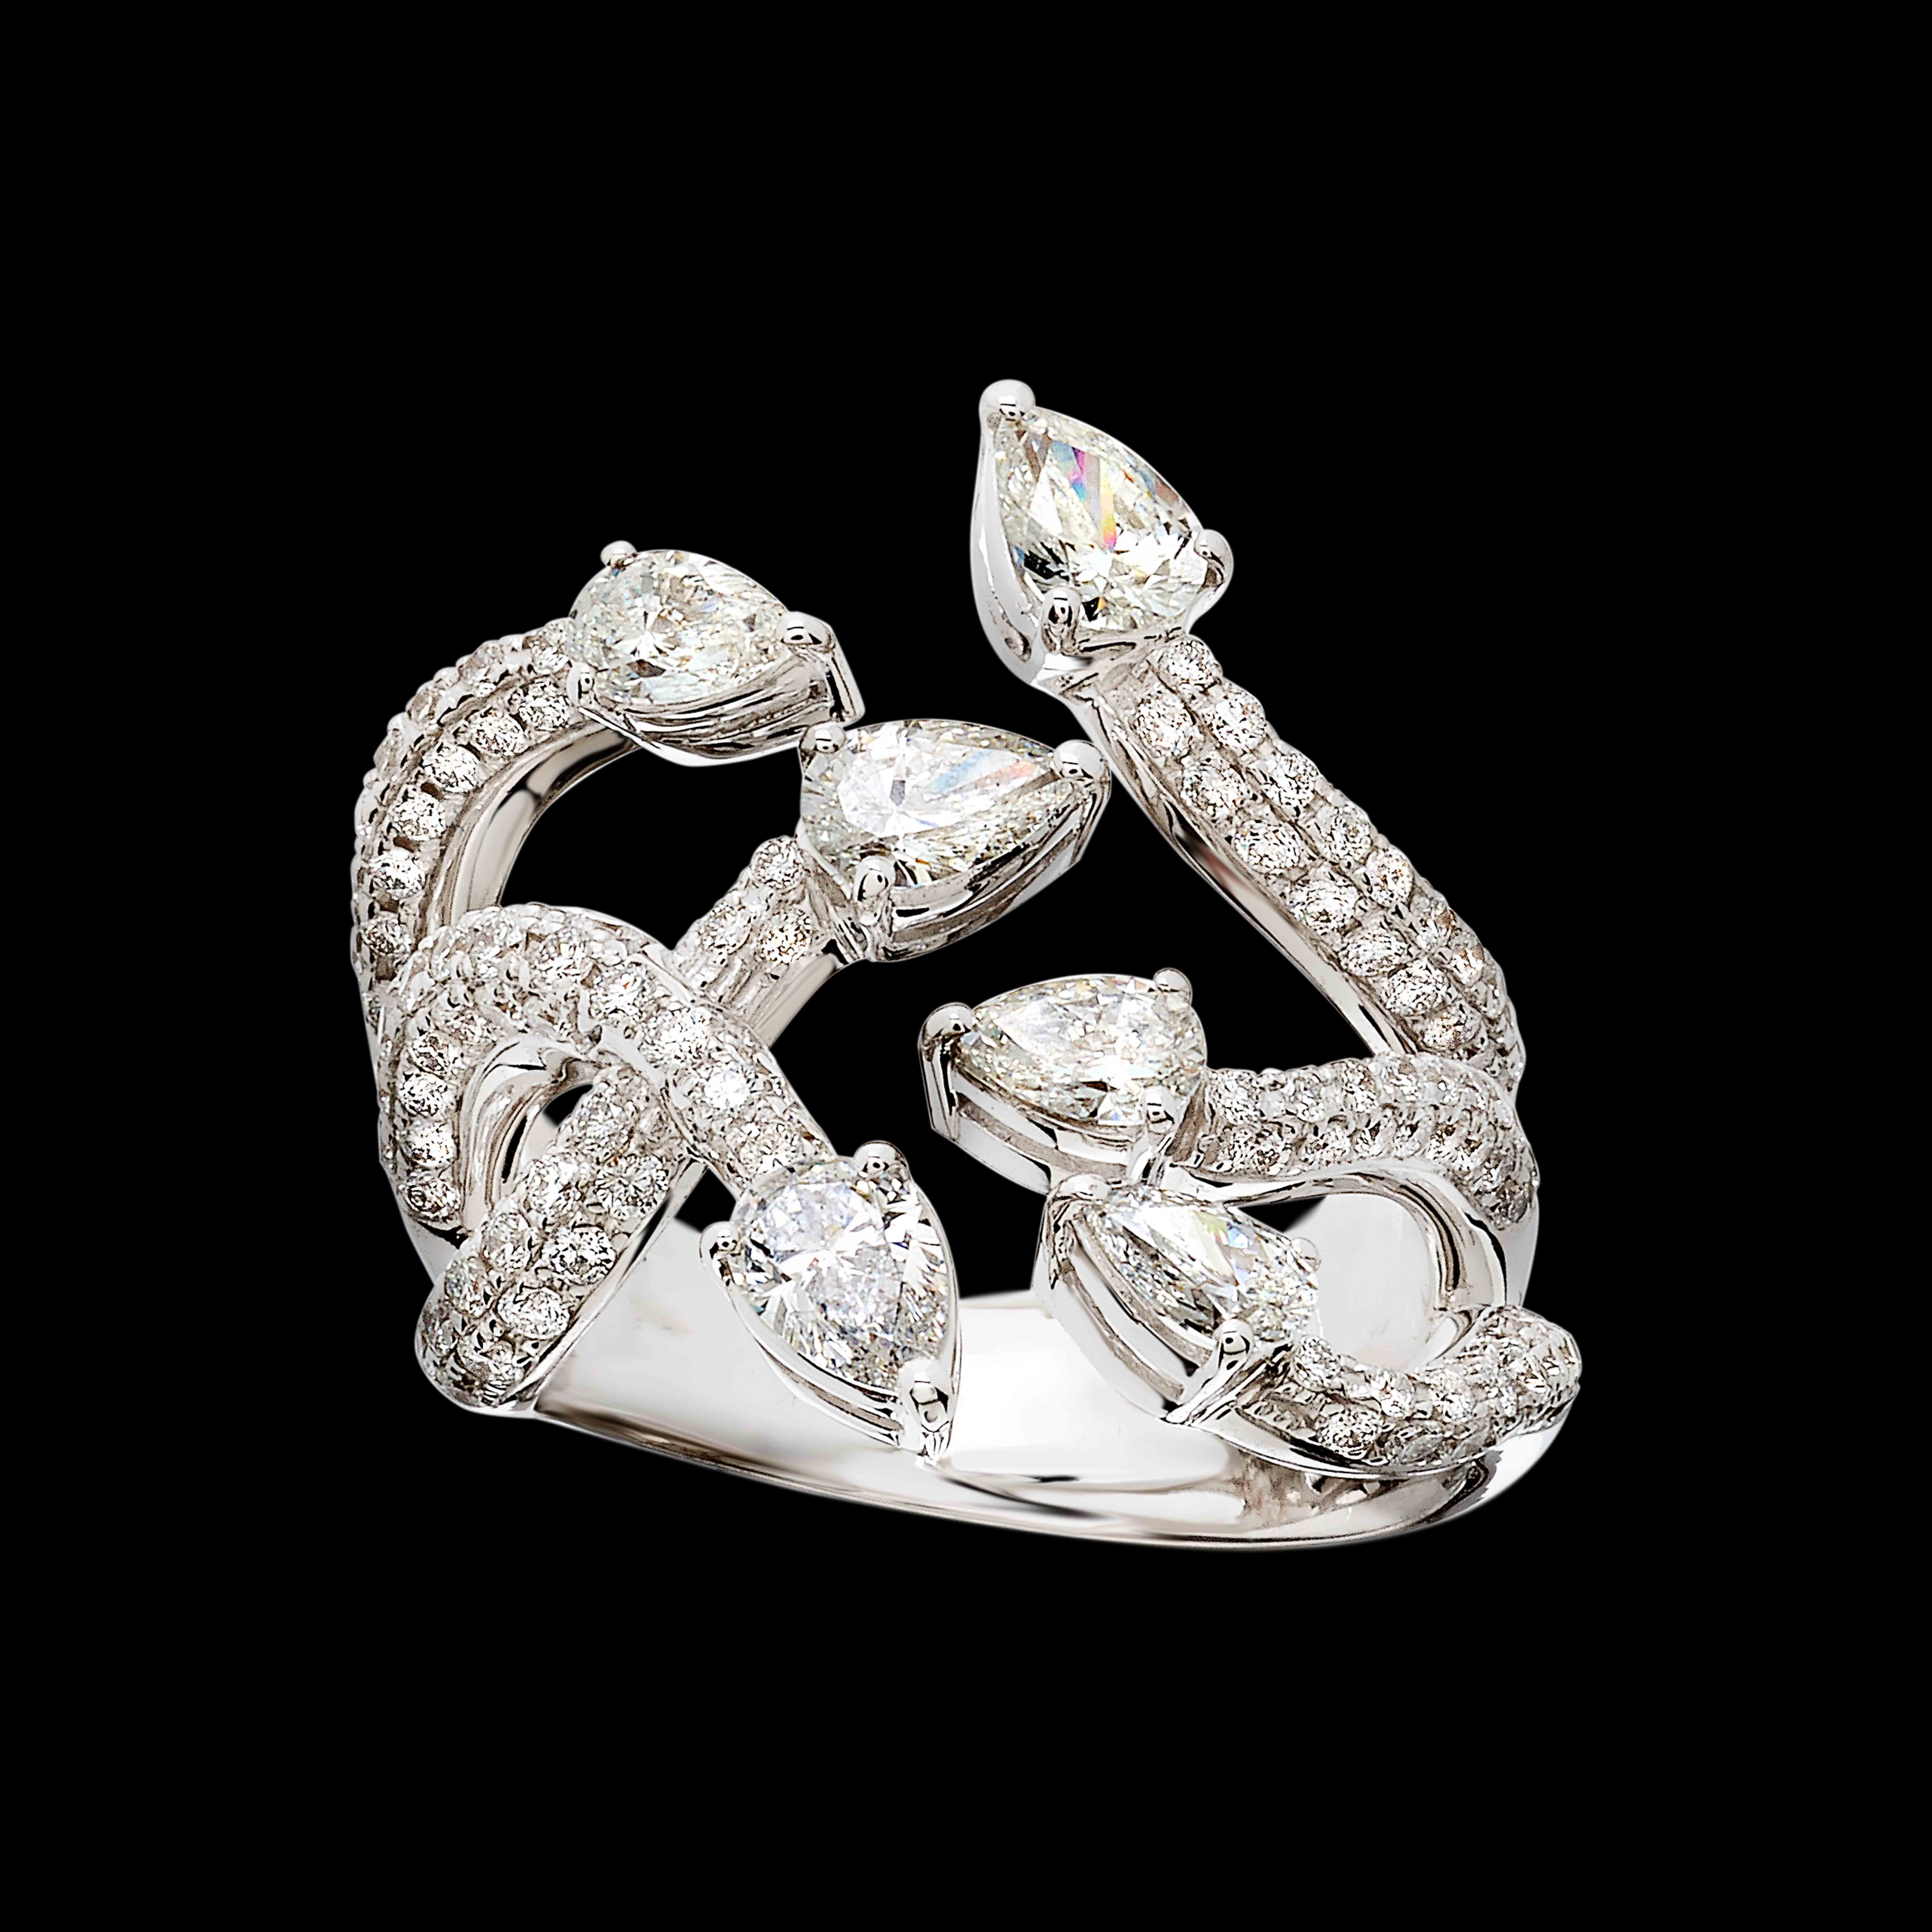 Massimo Raiteri exclusive jewelry fashion design ring bracelet anello diamanti bracciale moda unico unici high